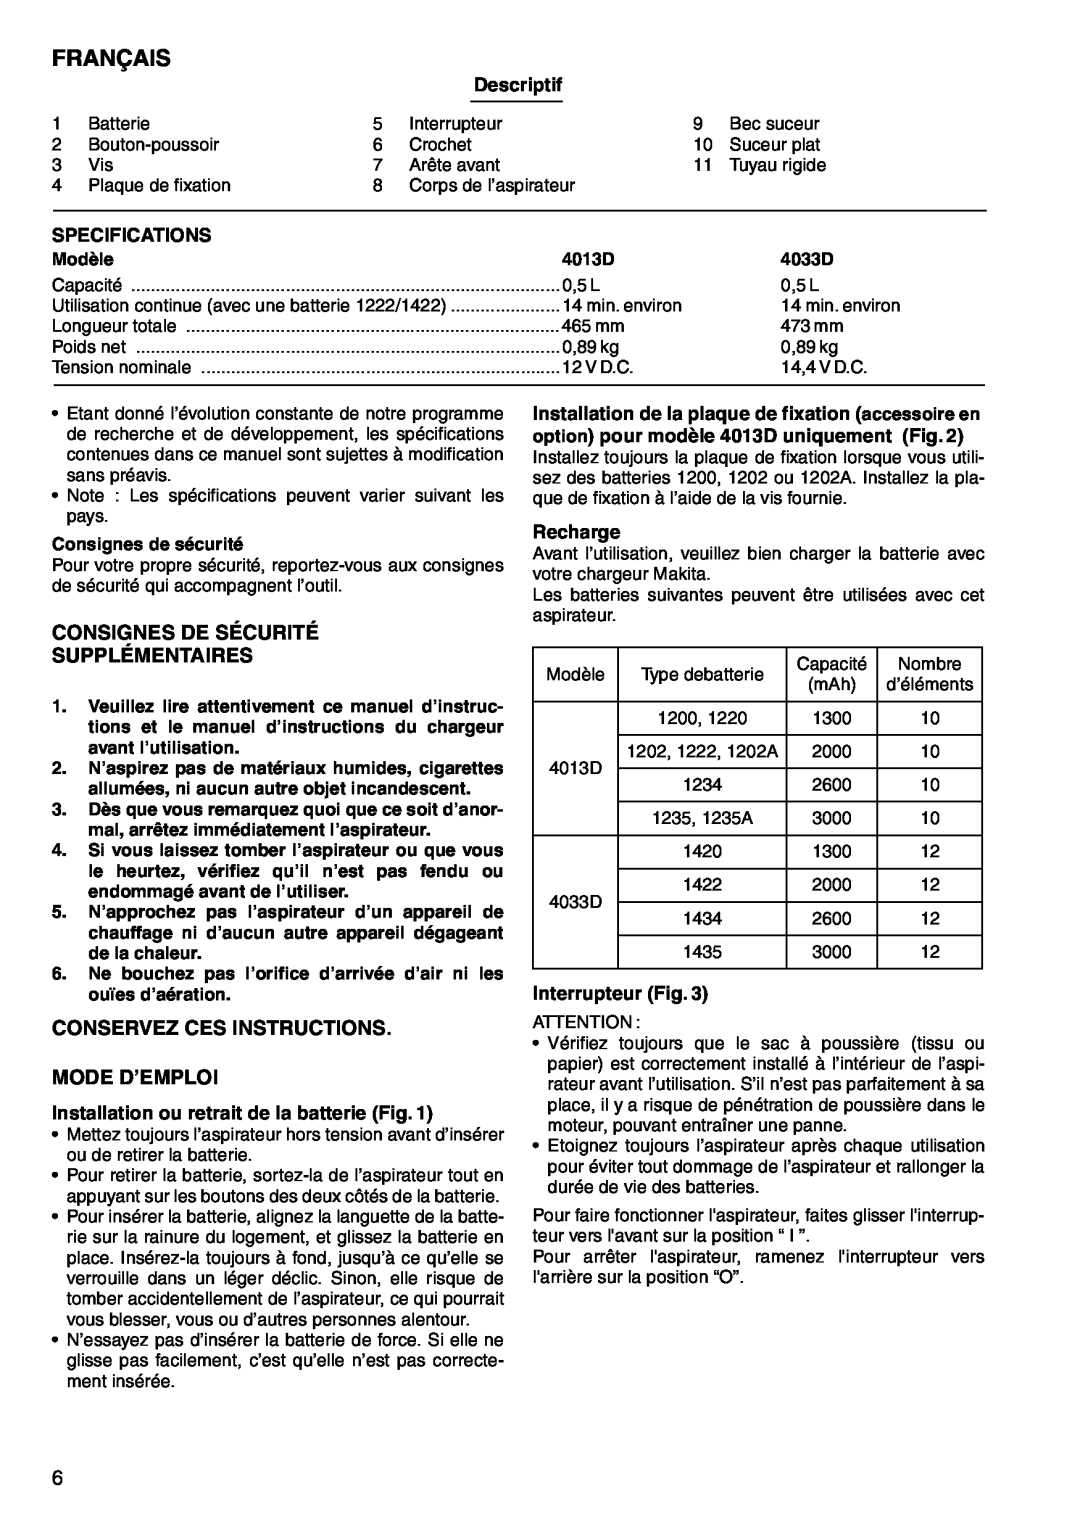 Makita 4013D Français, Descriptif, Specifications, Installation ou retrait de la batterie Fig, Recharge, Interrupteur Fig 